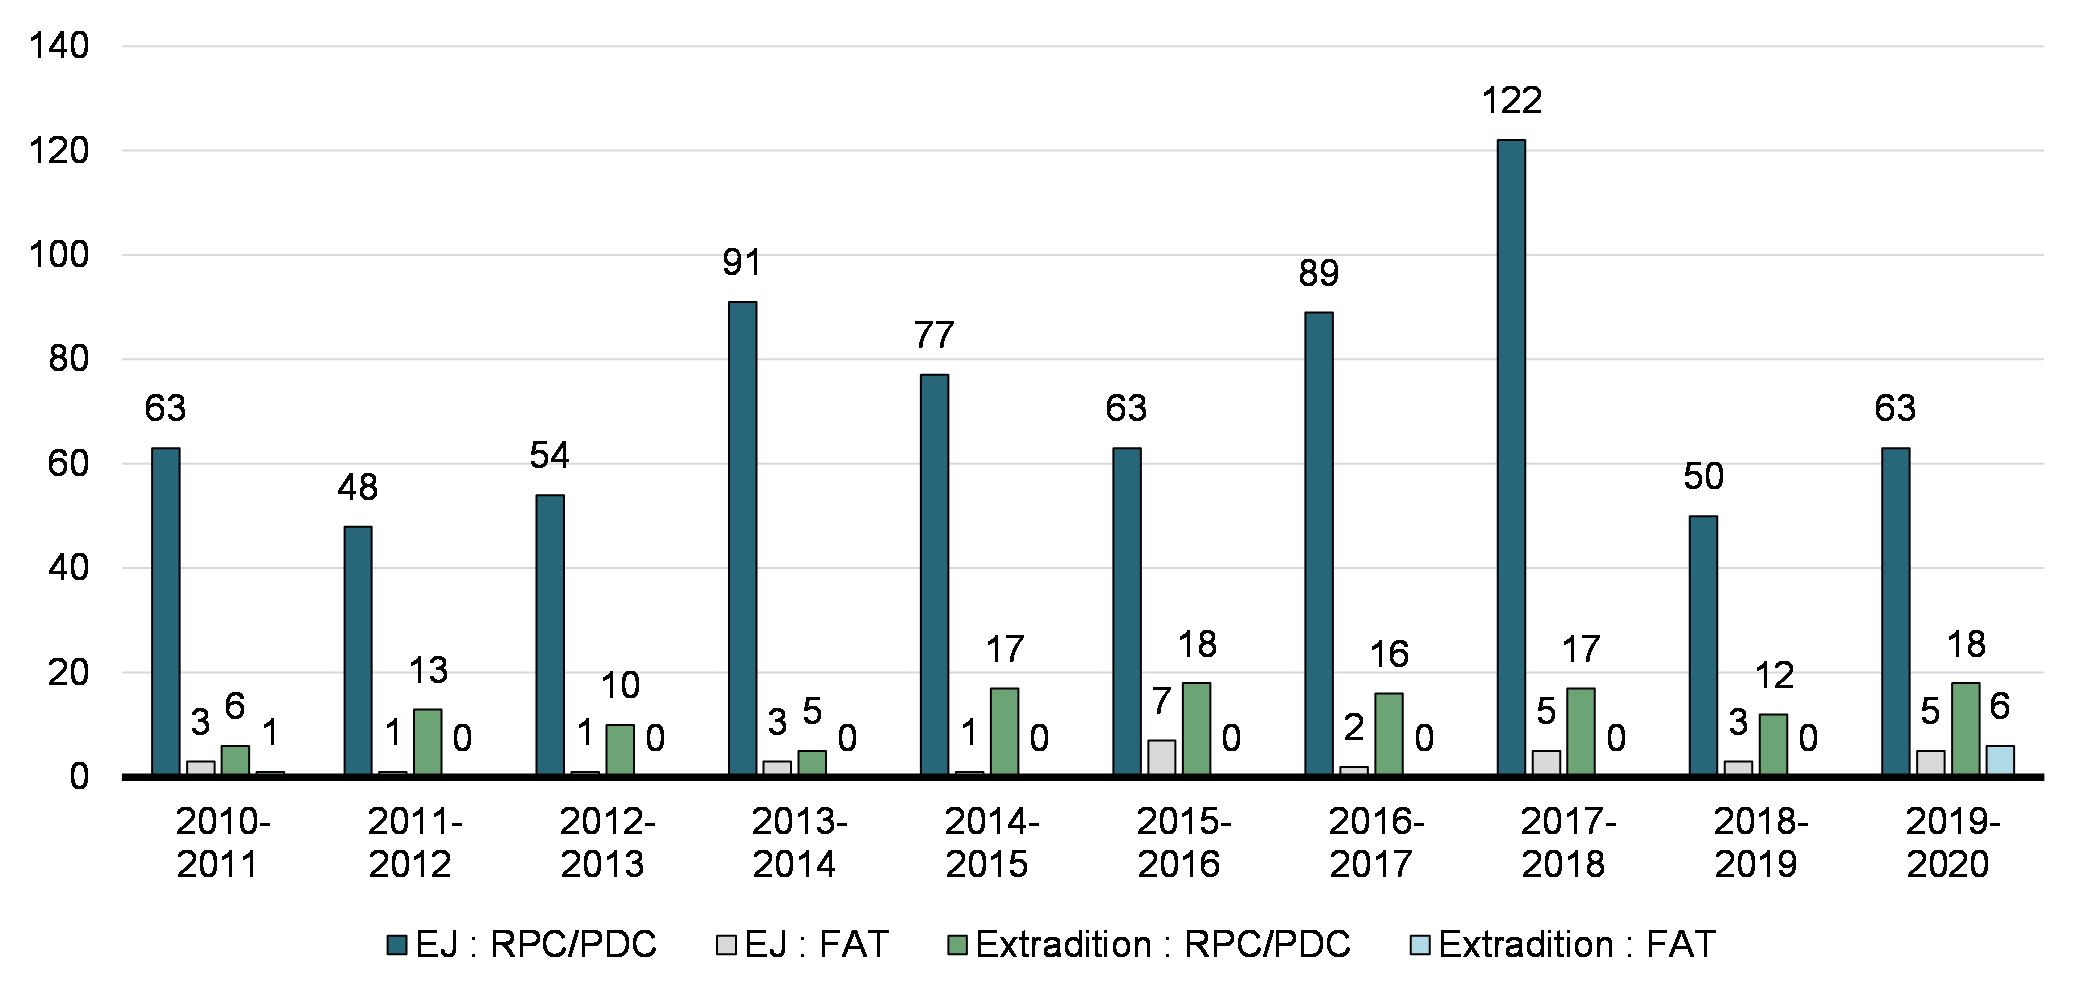 Graphique 4.5 : Nombre de demandes d'EJ et d'extradition reçues par année

